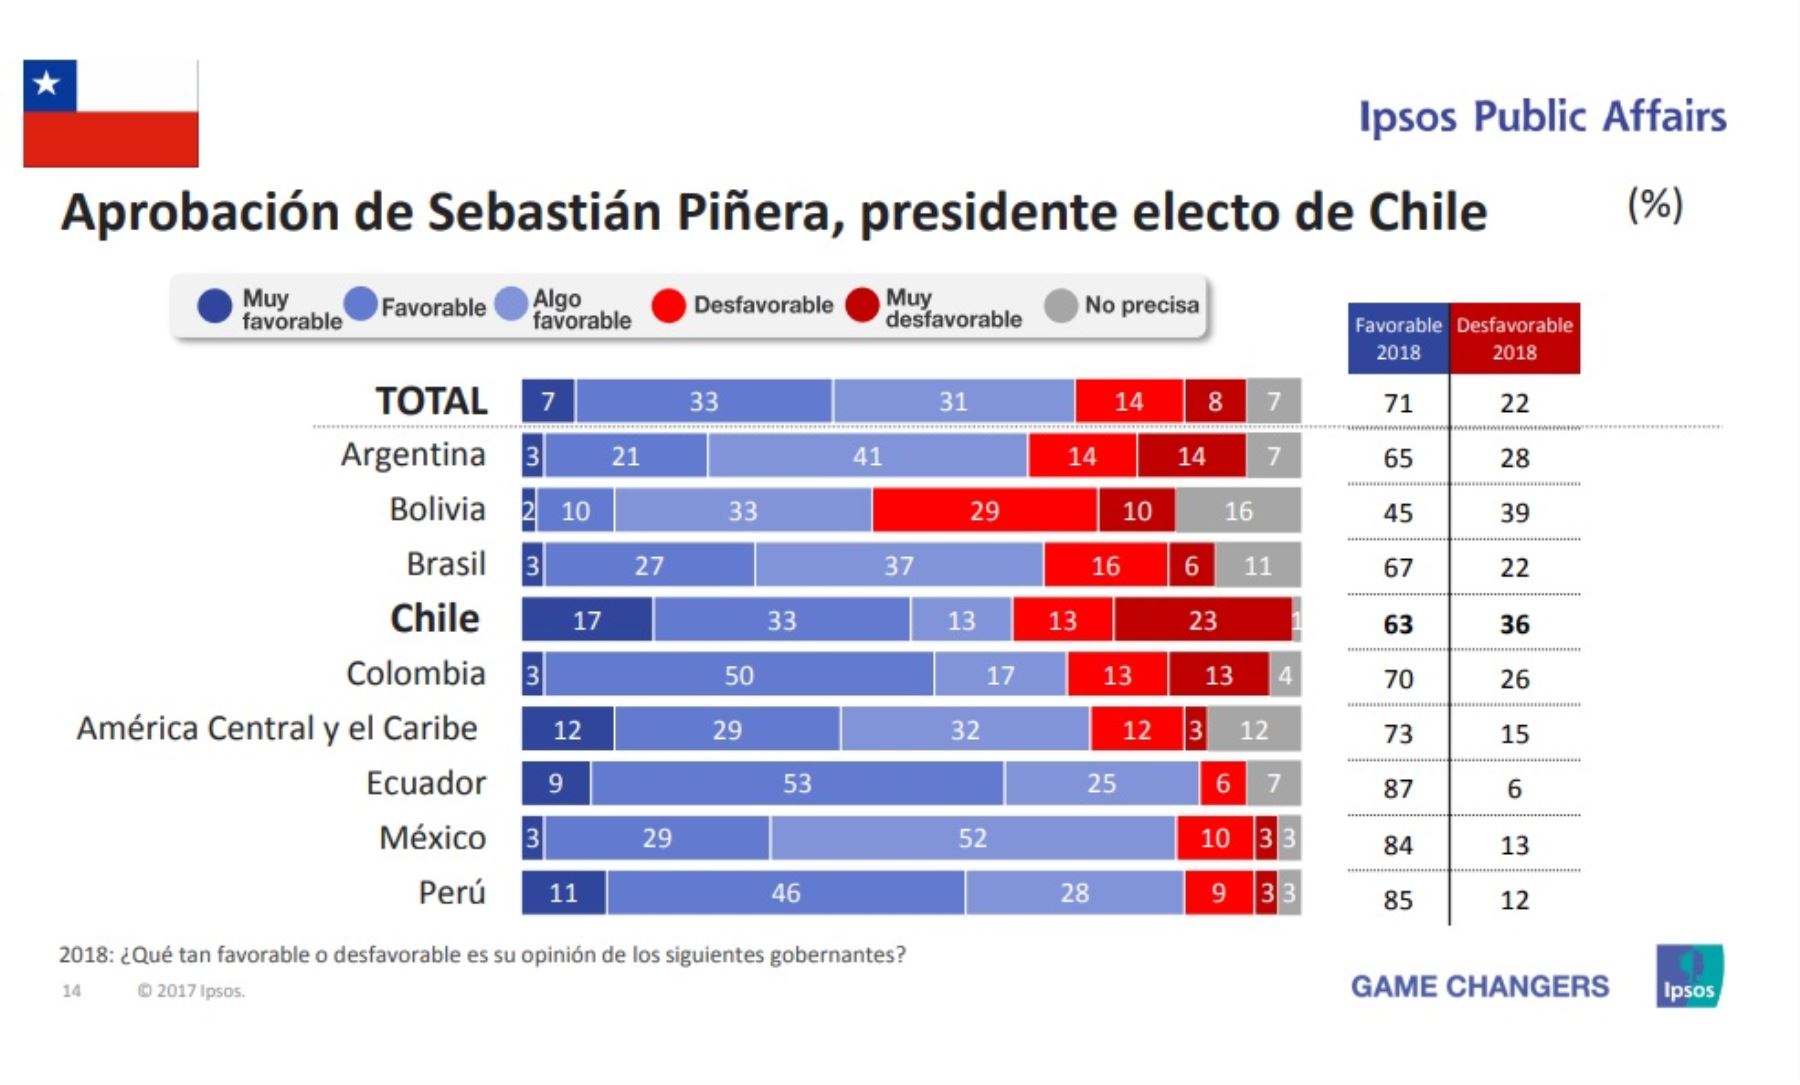 Aprobación del presidente de Chile, Sebastián Piñera. Encuesta Ipsos Public Affairs 2018.